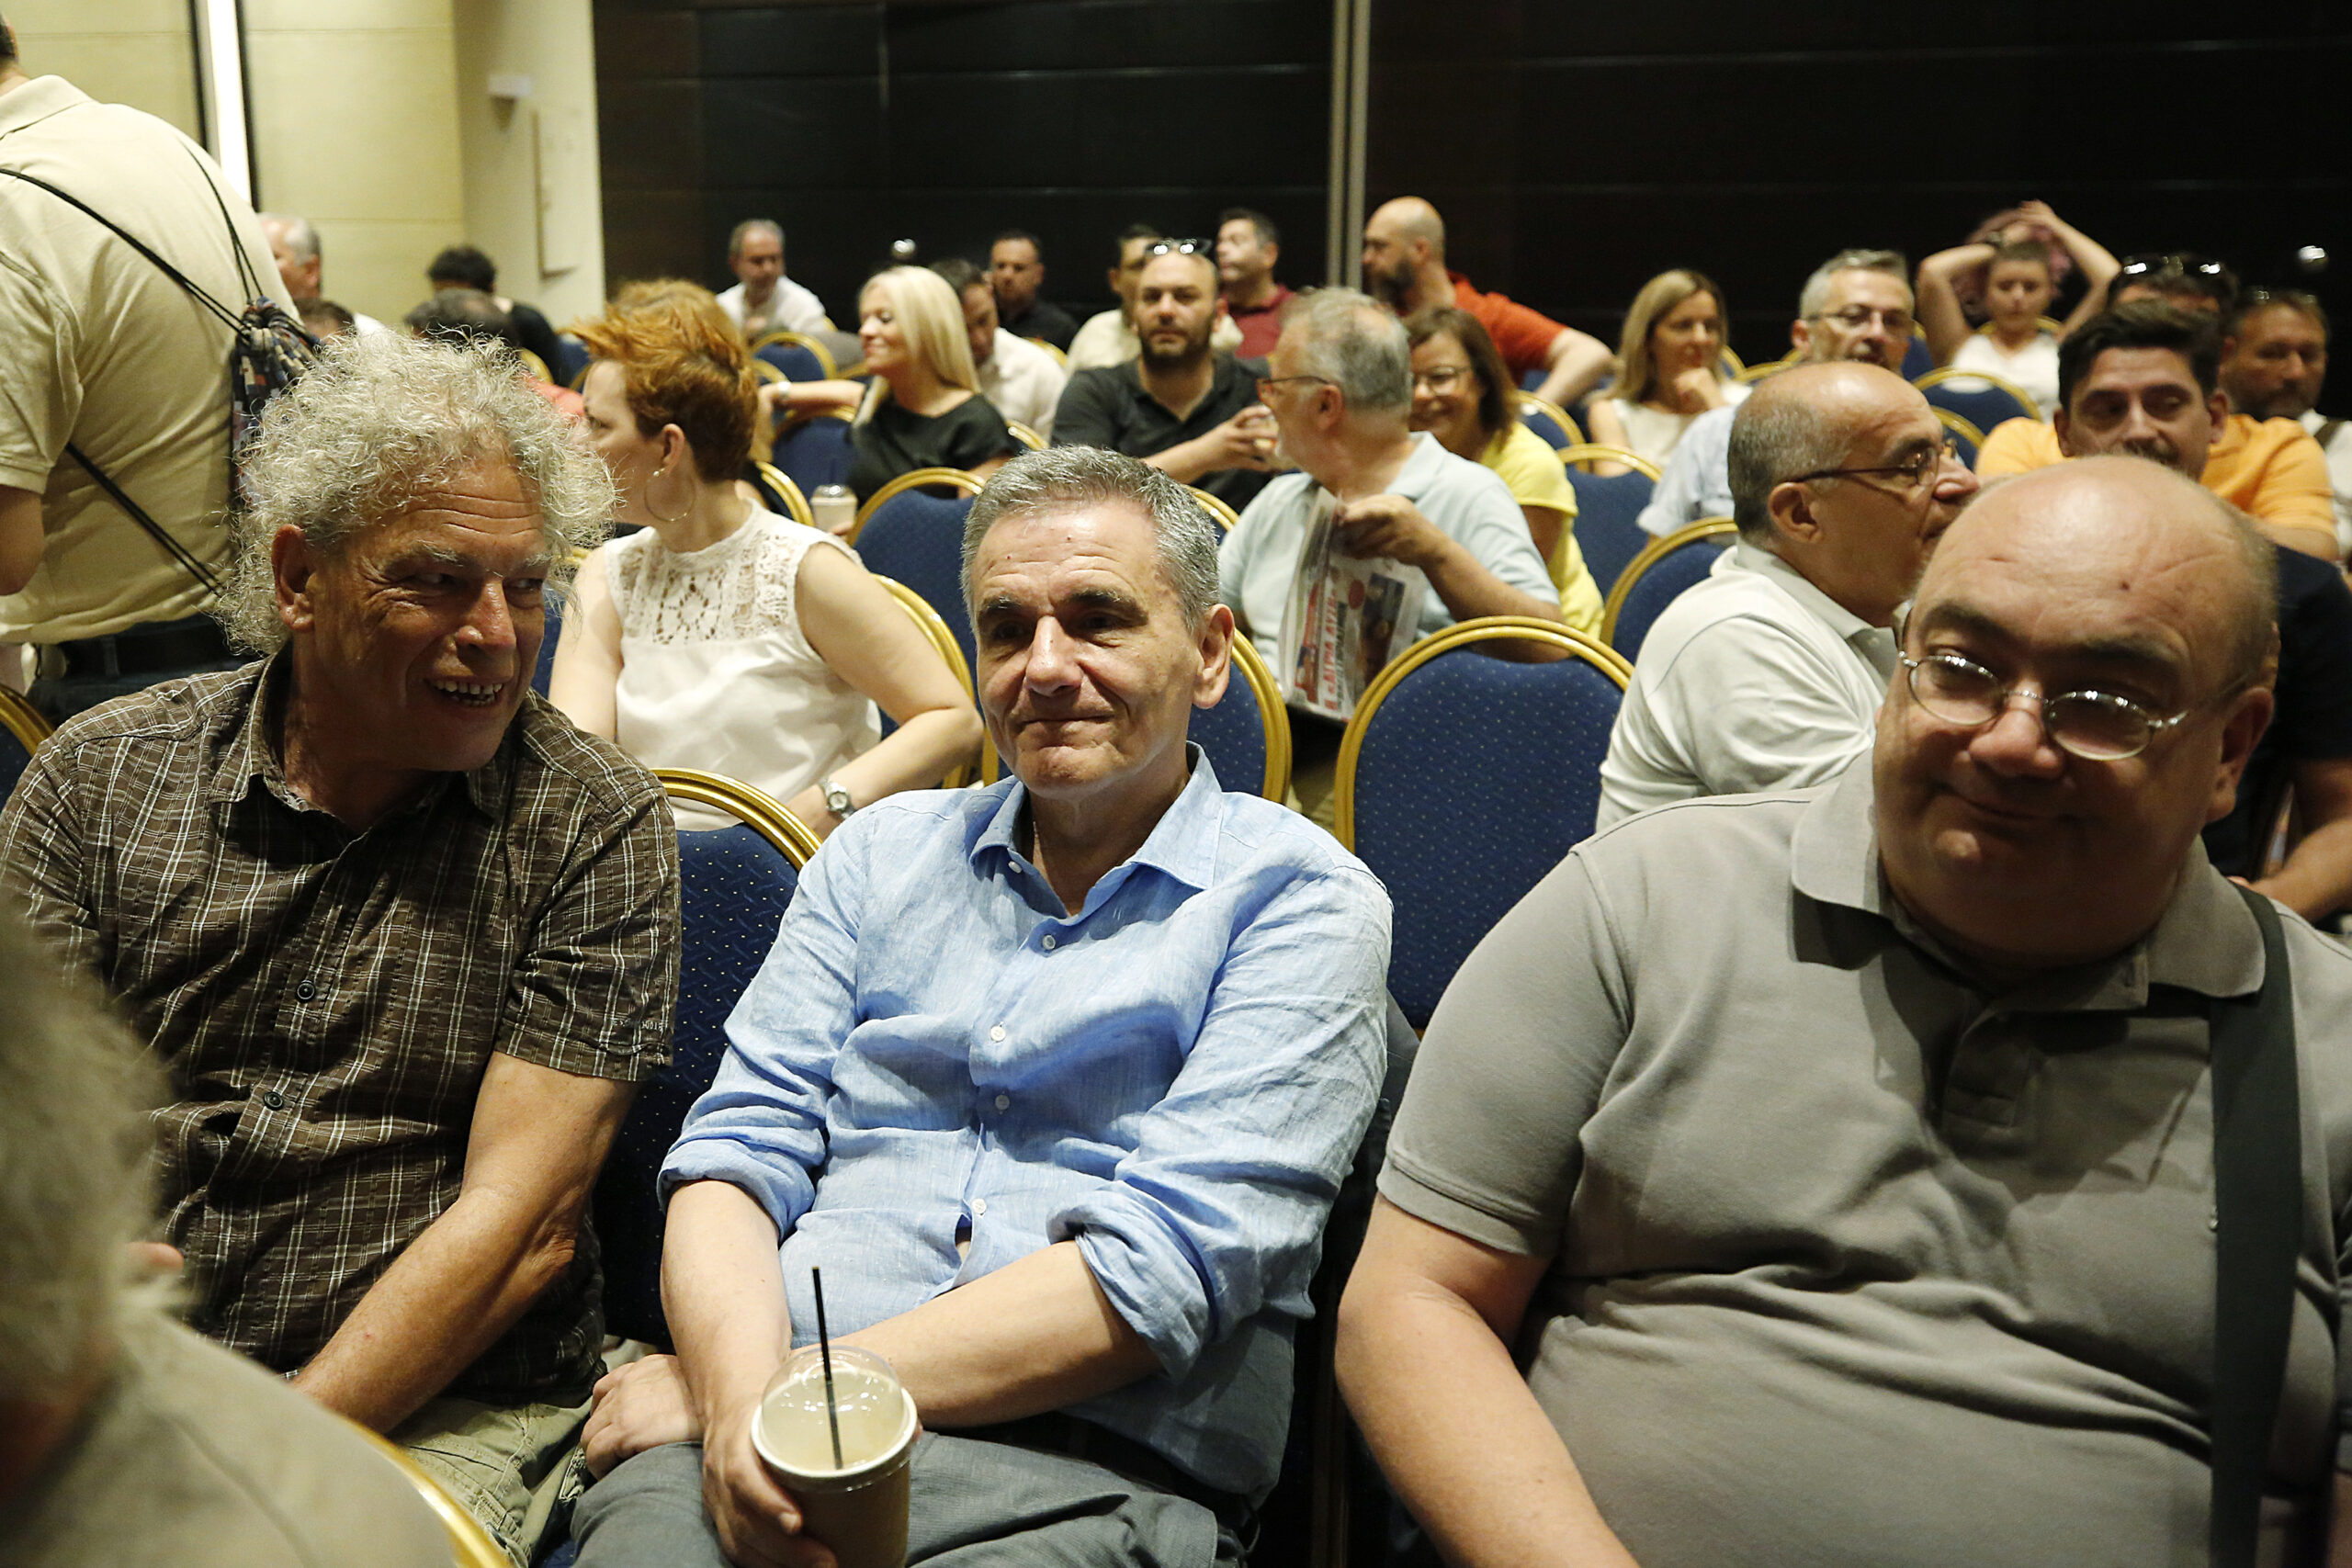 ΣΥΡΙΖΑ: Κείμενο "καπέλο" της "Ομπρέλας" - Τι προτείνει, σε ποιους επιτίθεται σφοδρά